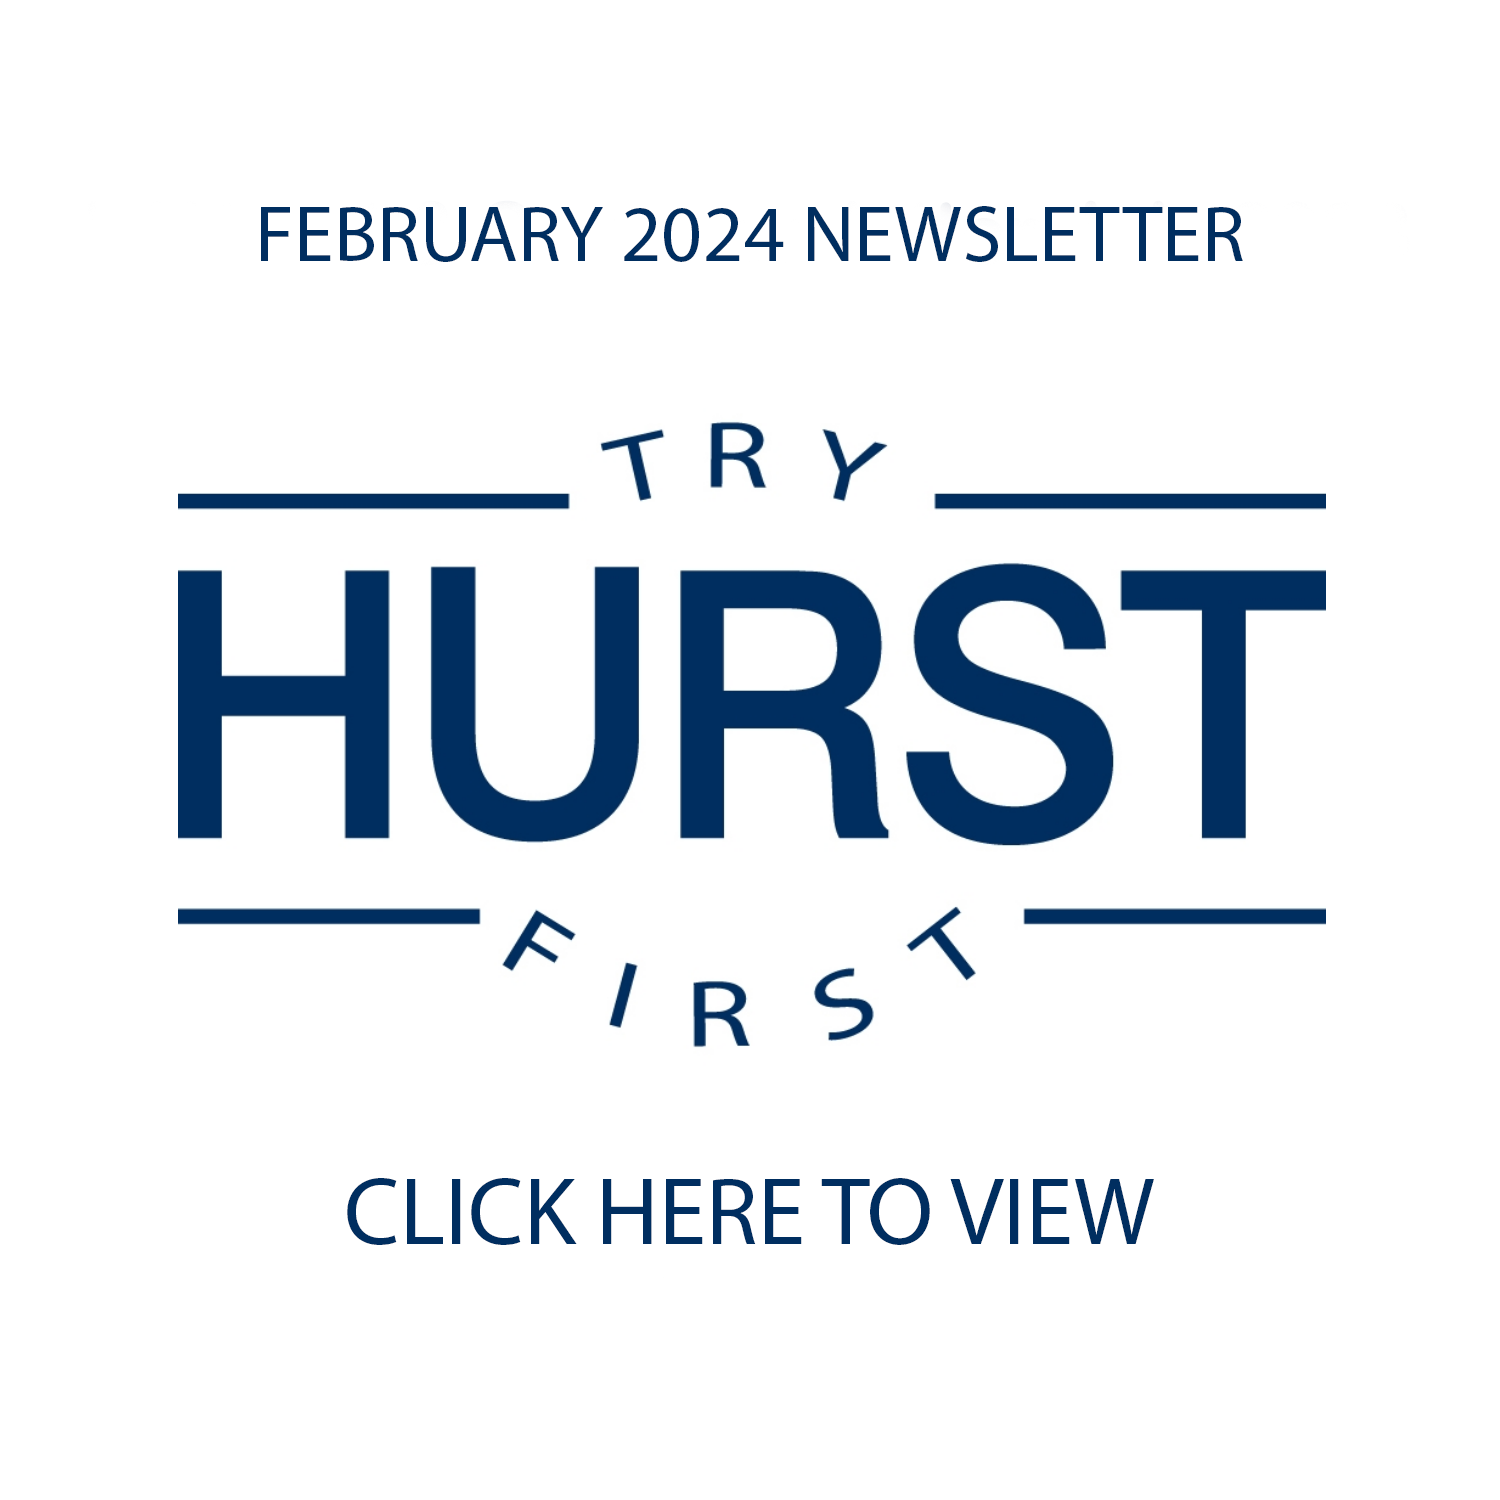 February 2024 Newsletter